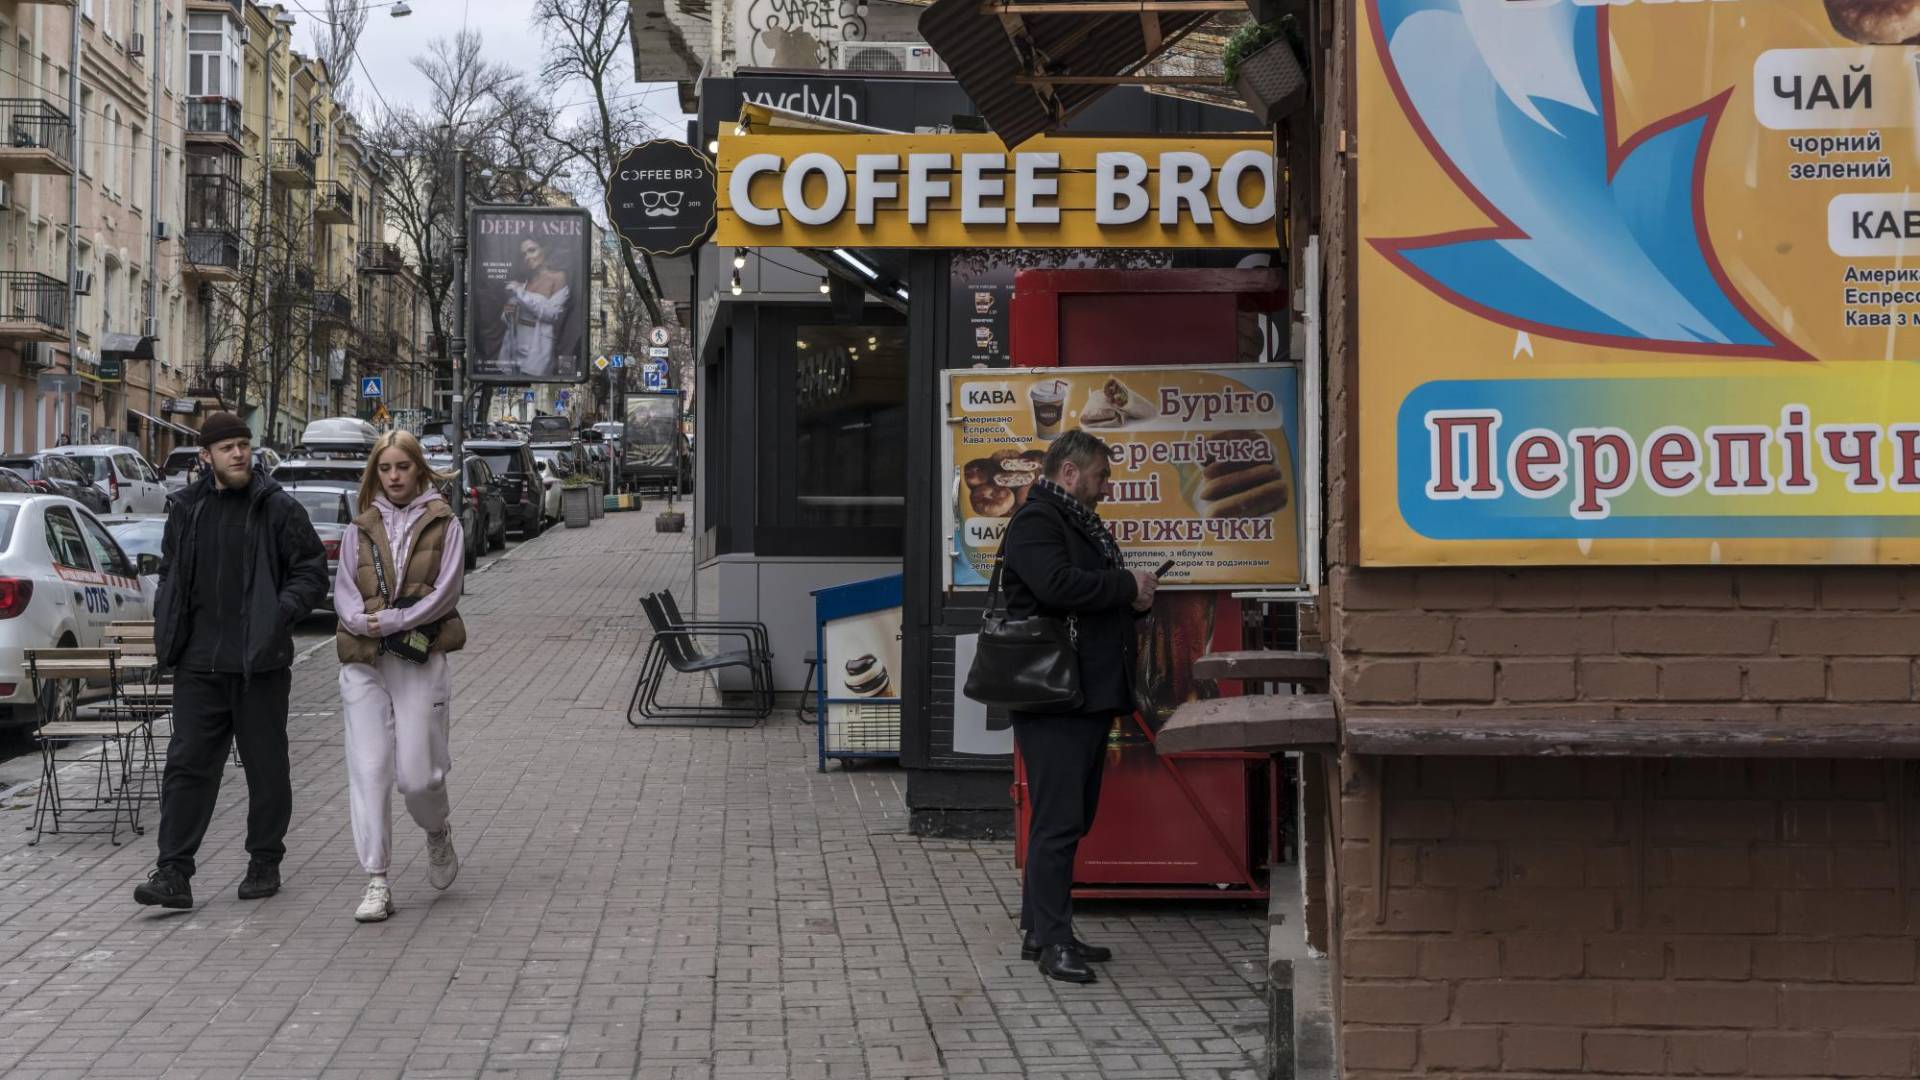 $!En Kiev, Ucrania, los quioscos de café atendidos por baristas que sirven mochas por menos de 2 dólares son comunes.